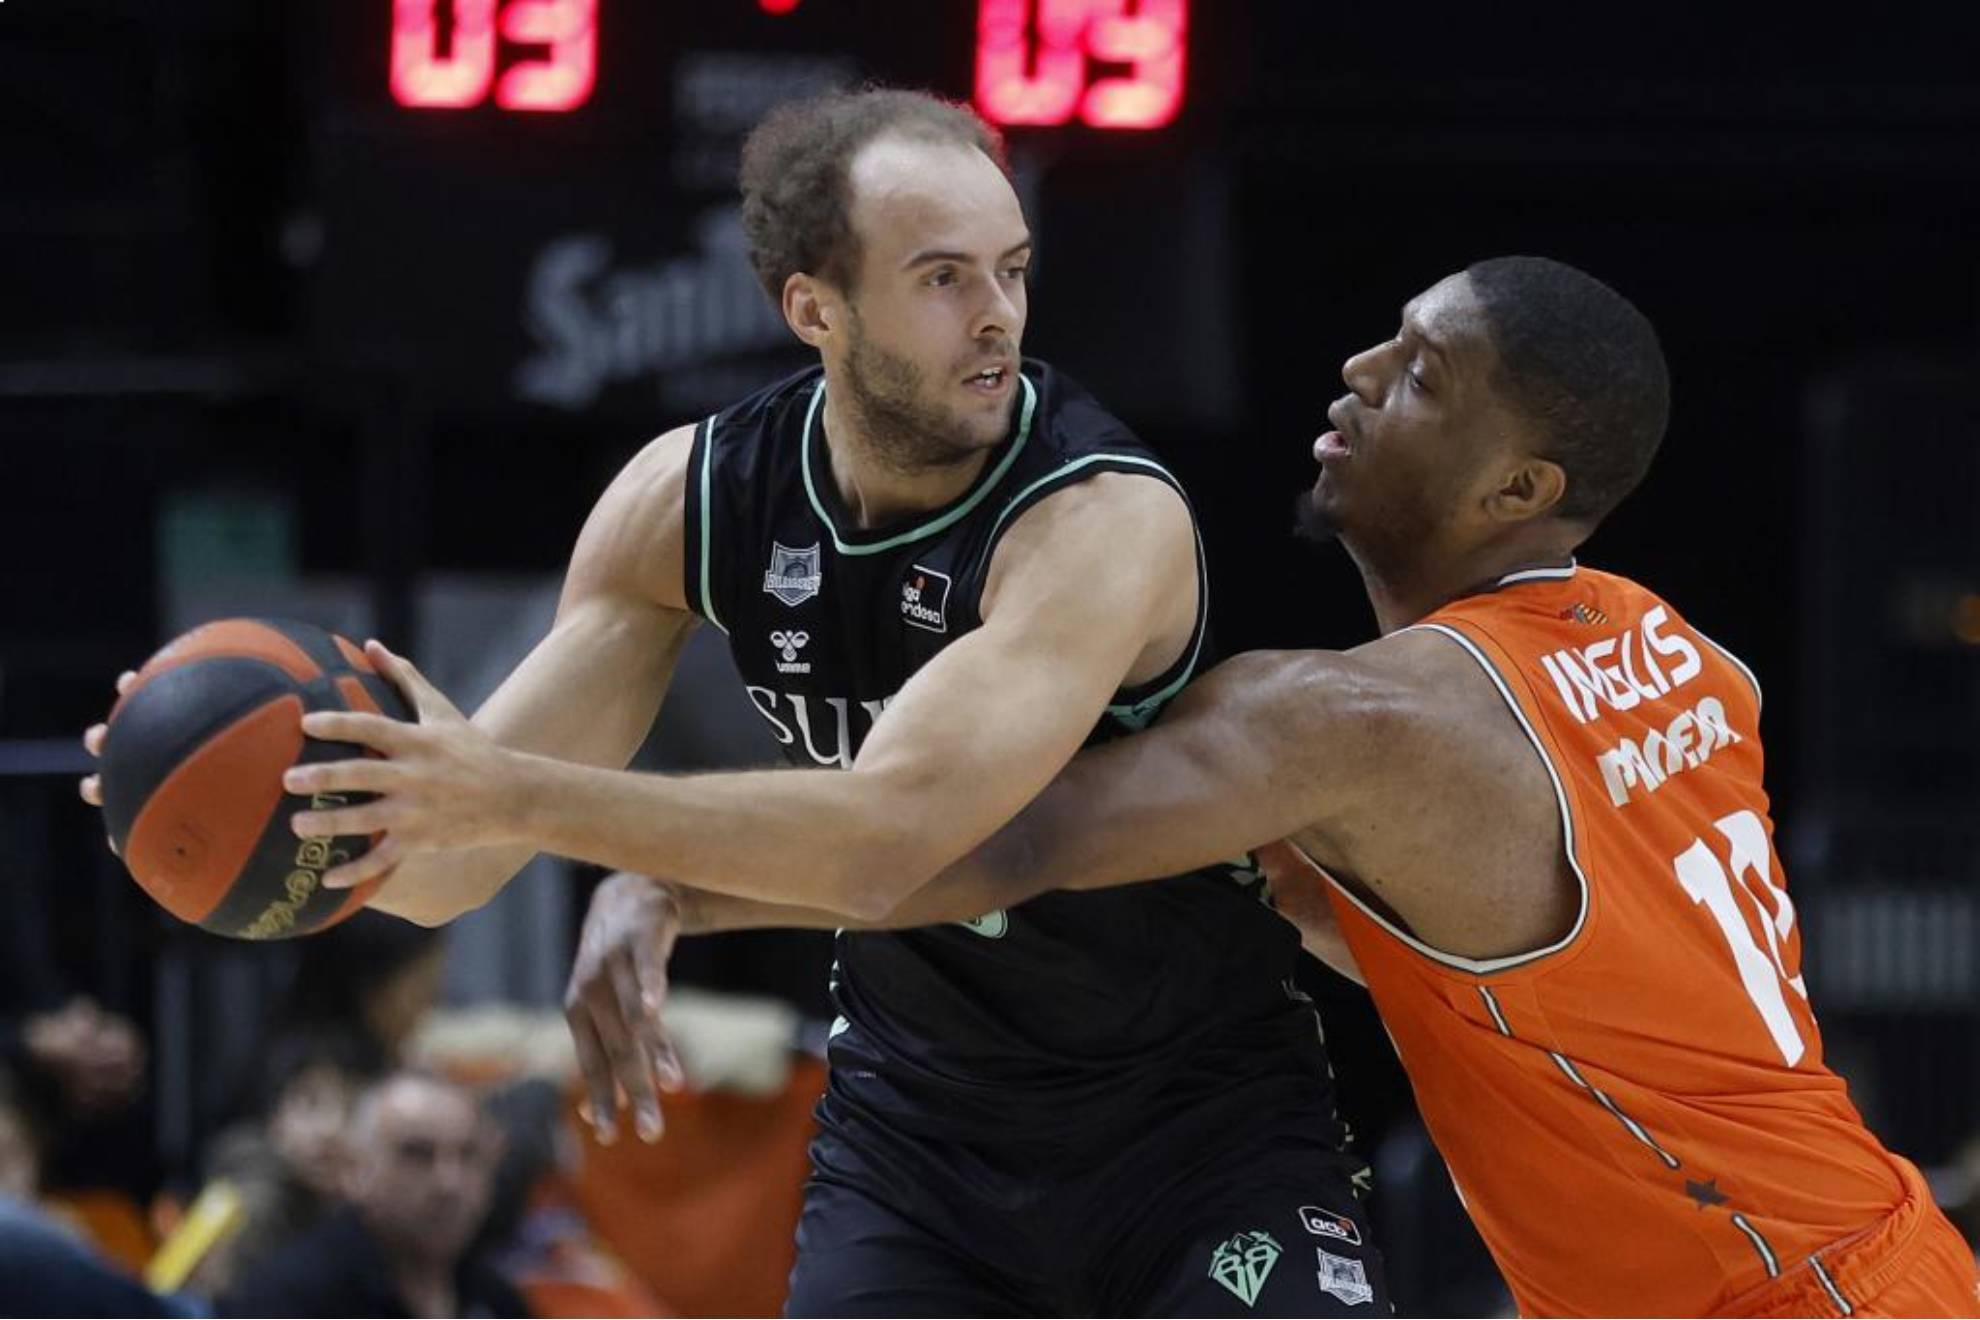 El ala pívot francés del Valencia Basket Damien Inglis defiende al ala pívot sueco del Bilbao Basket Denzel Andersson.